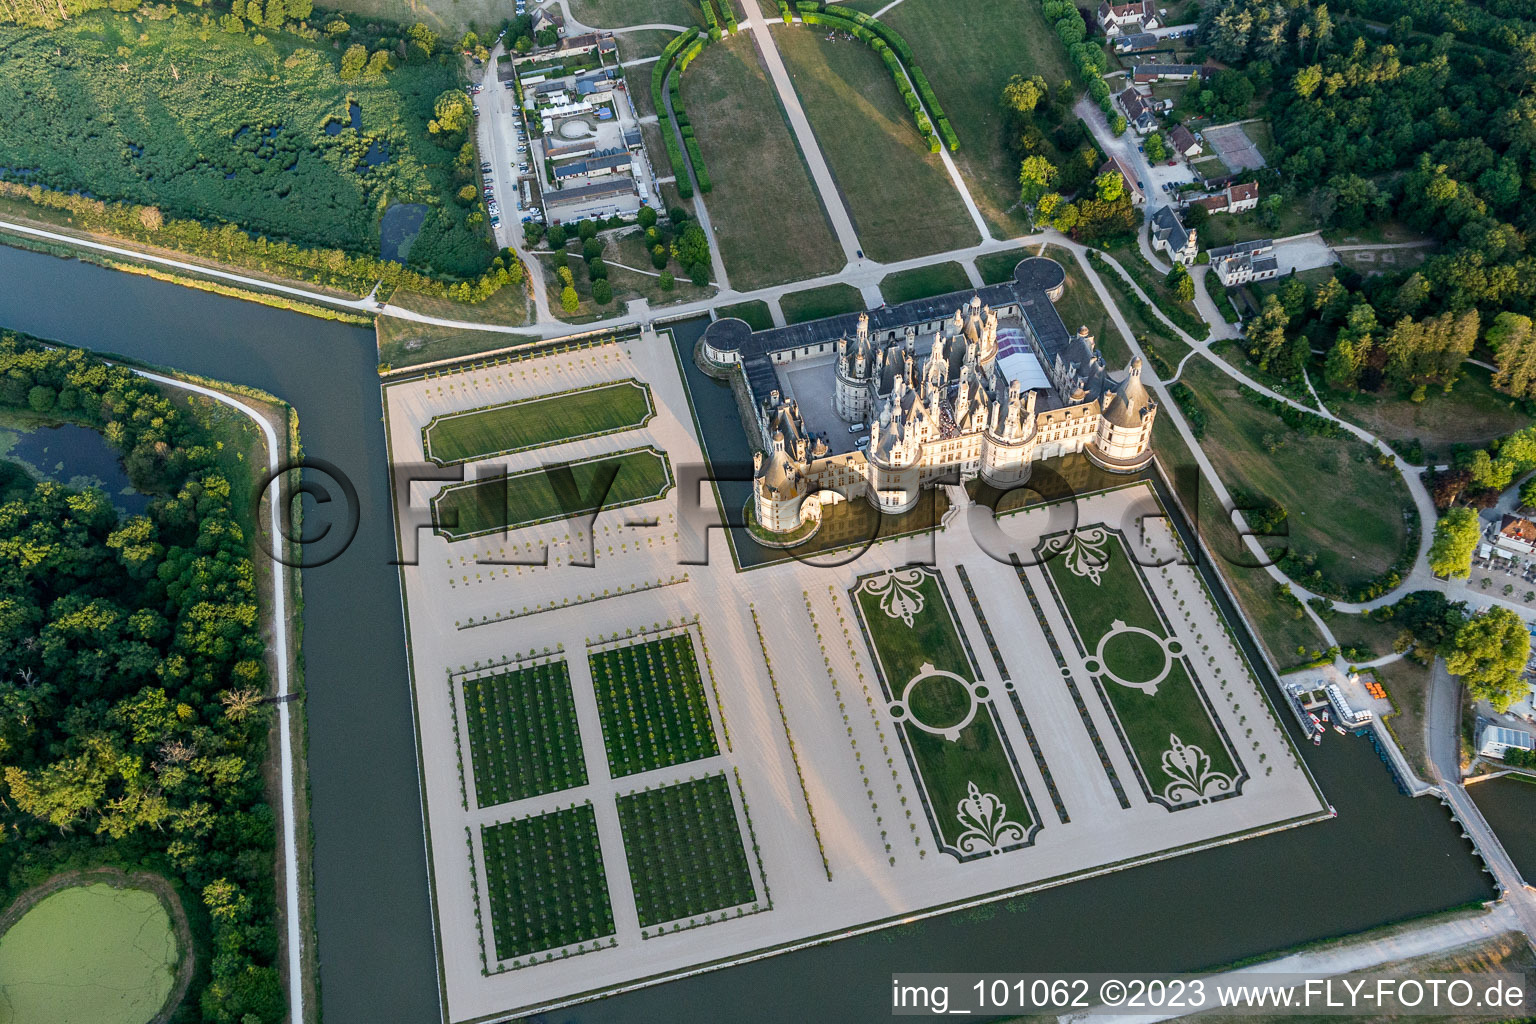 Chambord im Bundesland Loir-et-Cher, Frankreich aus der Drohnenperspektive